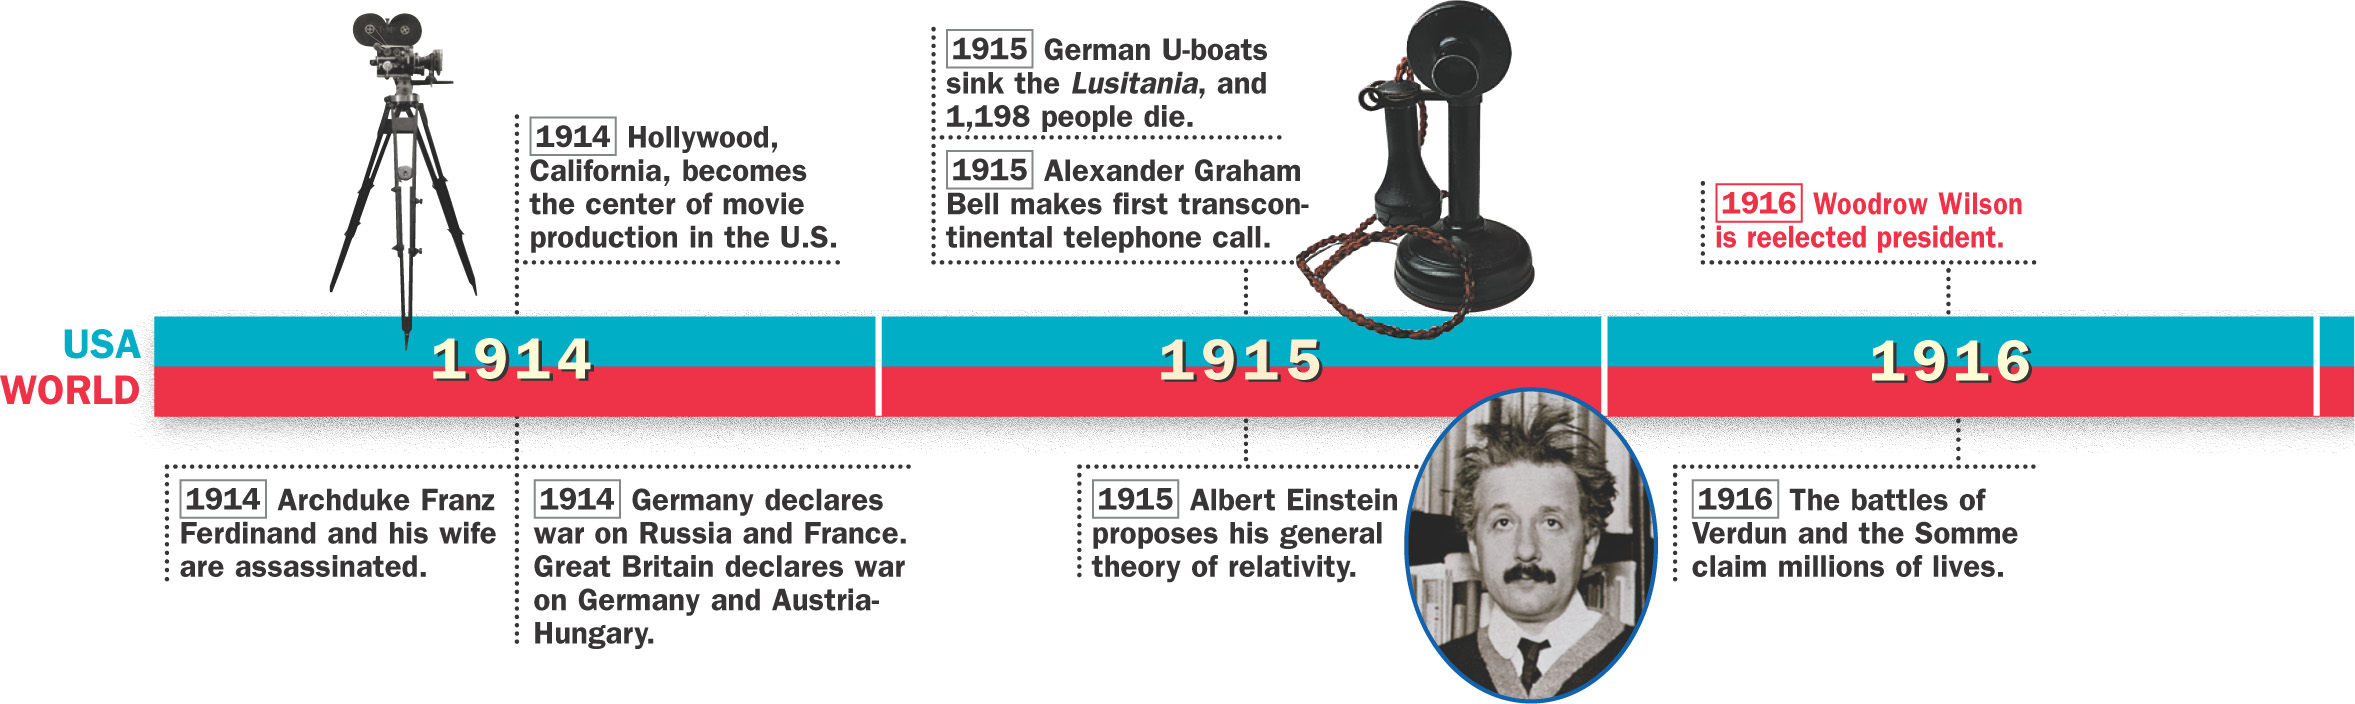 Timeline: 1914 - 1916